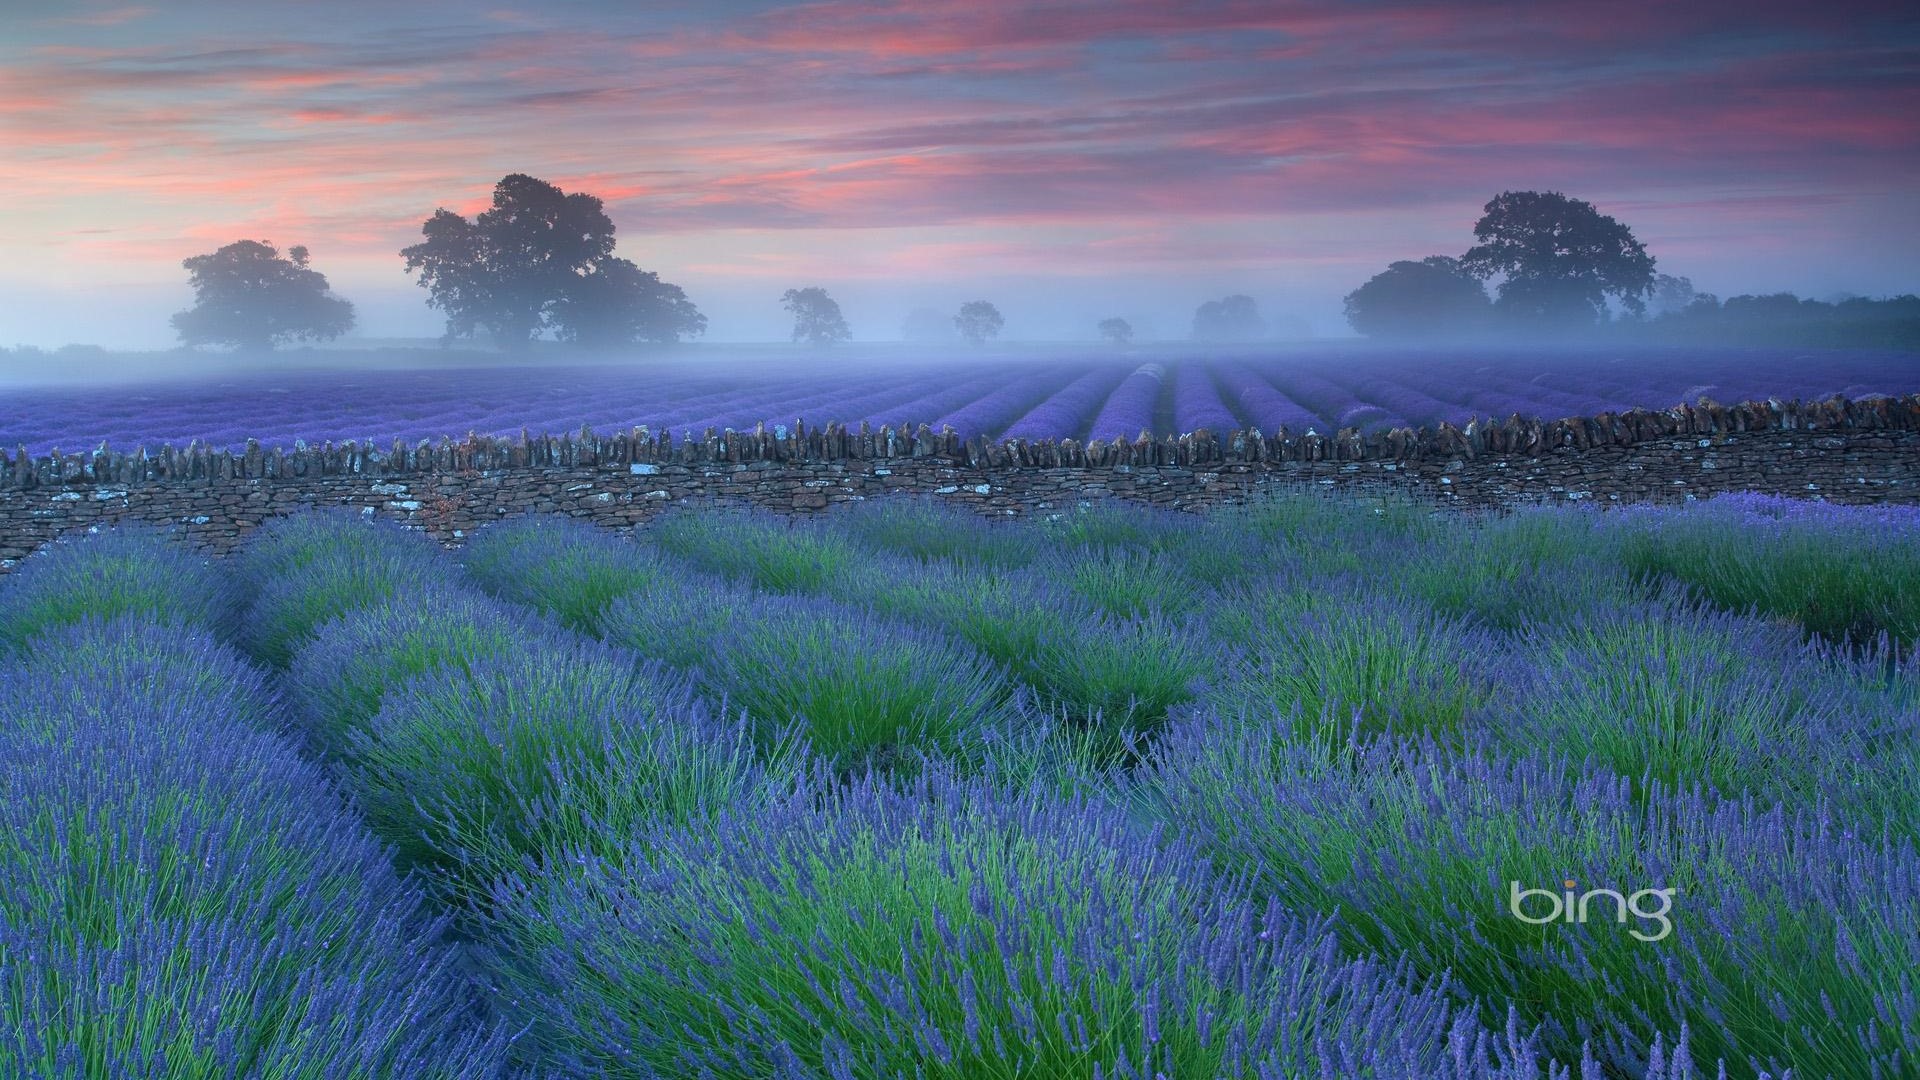 Bing Themes Grasslands Plains Widescreen HD Wallpaper